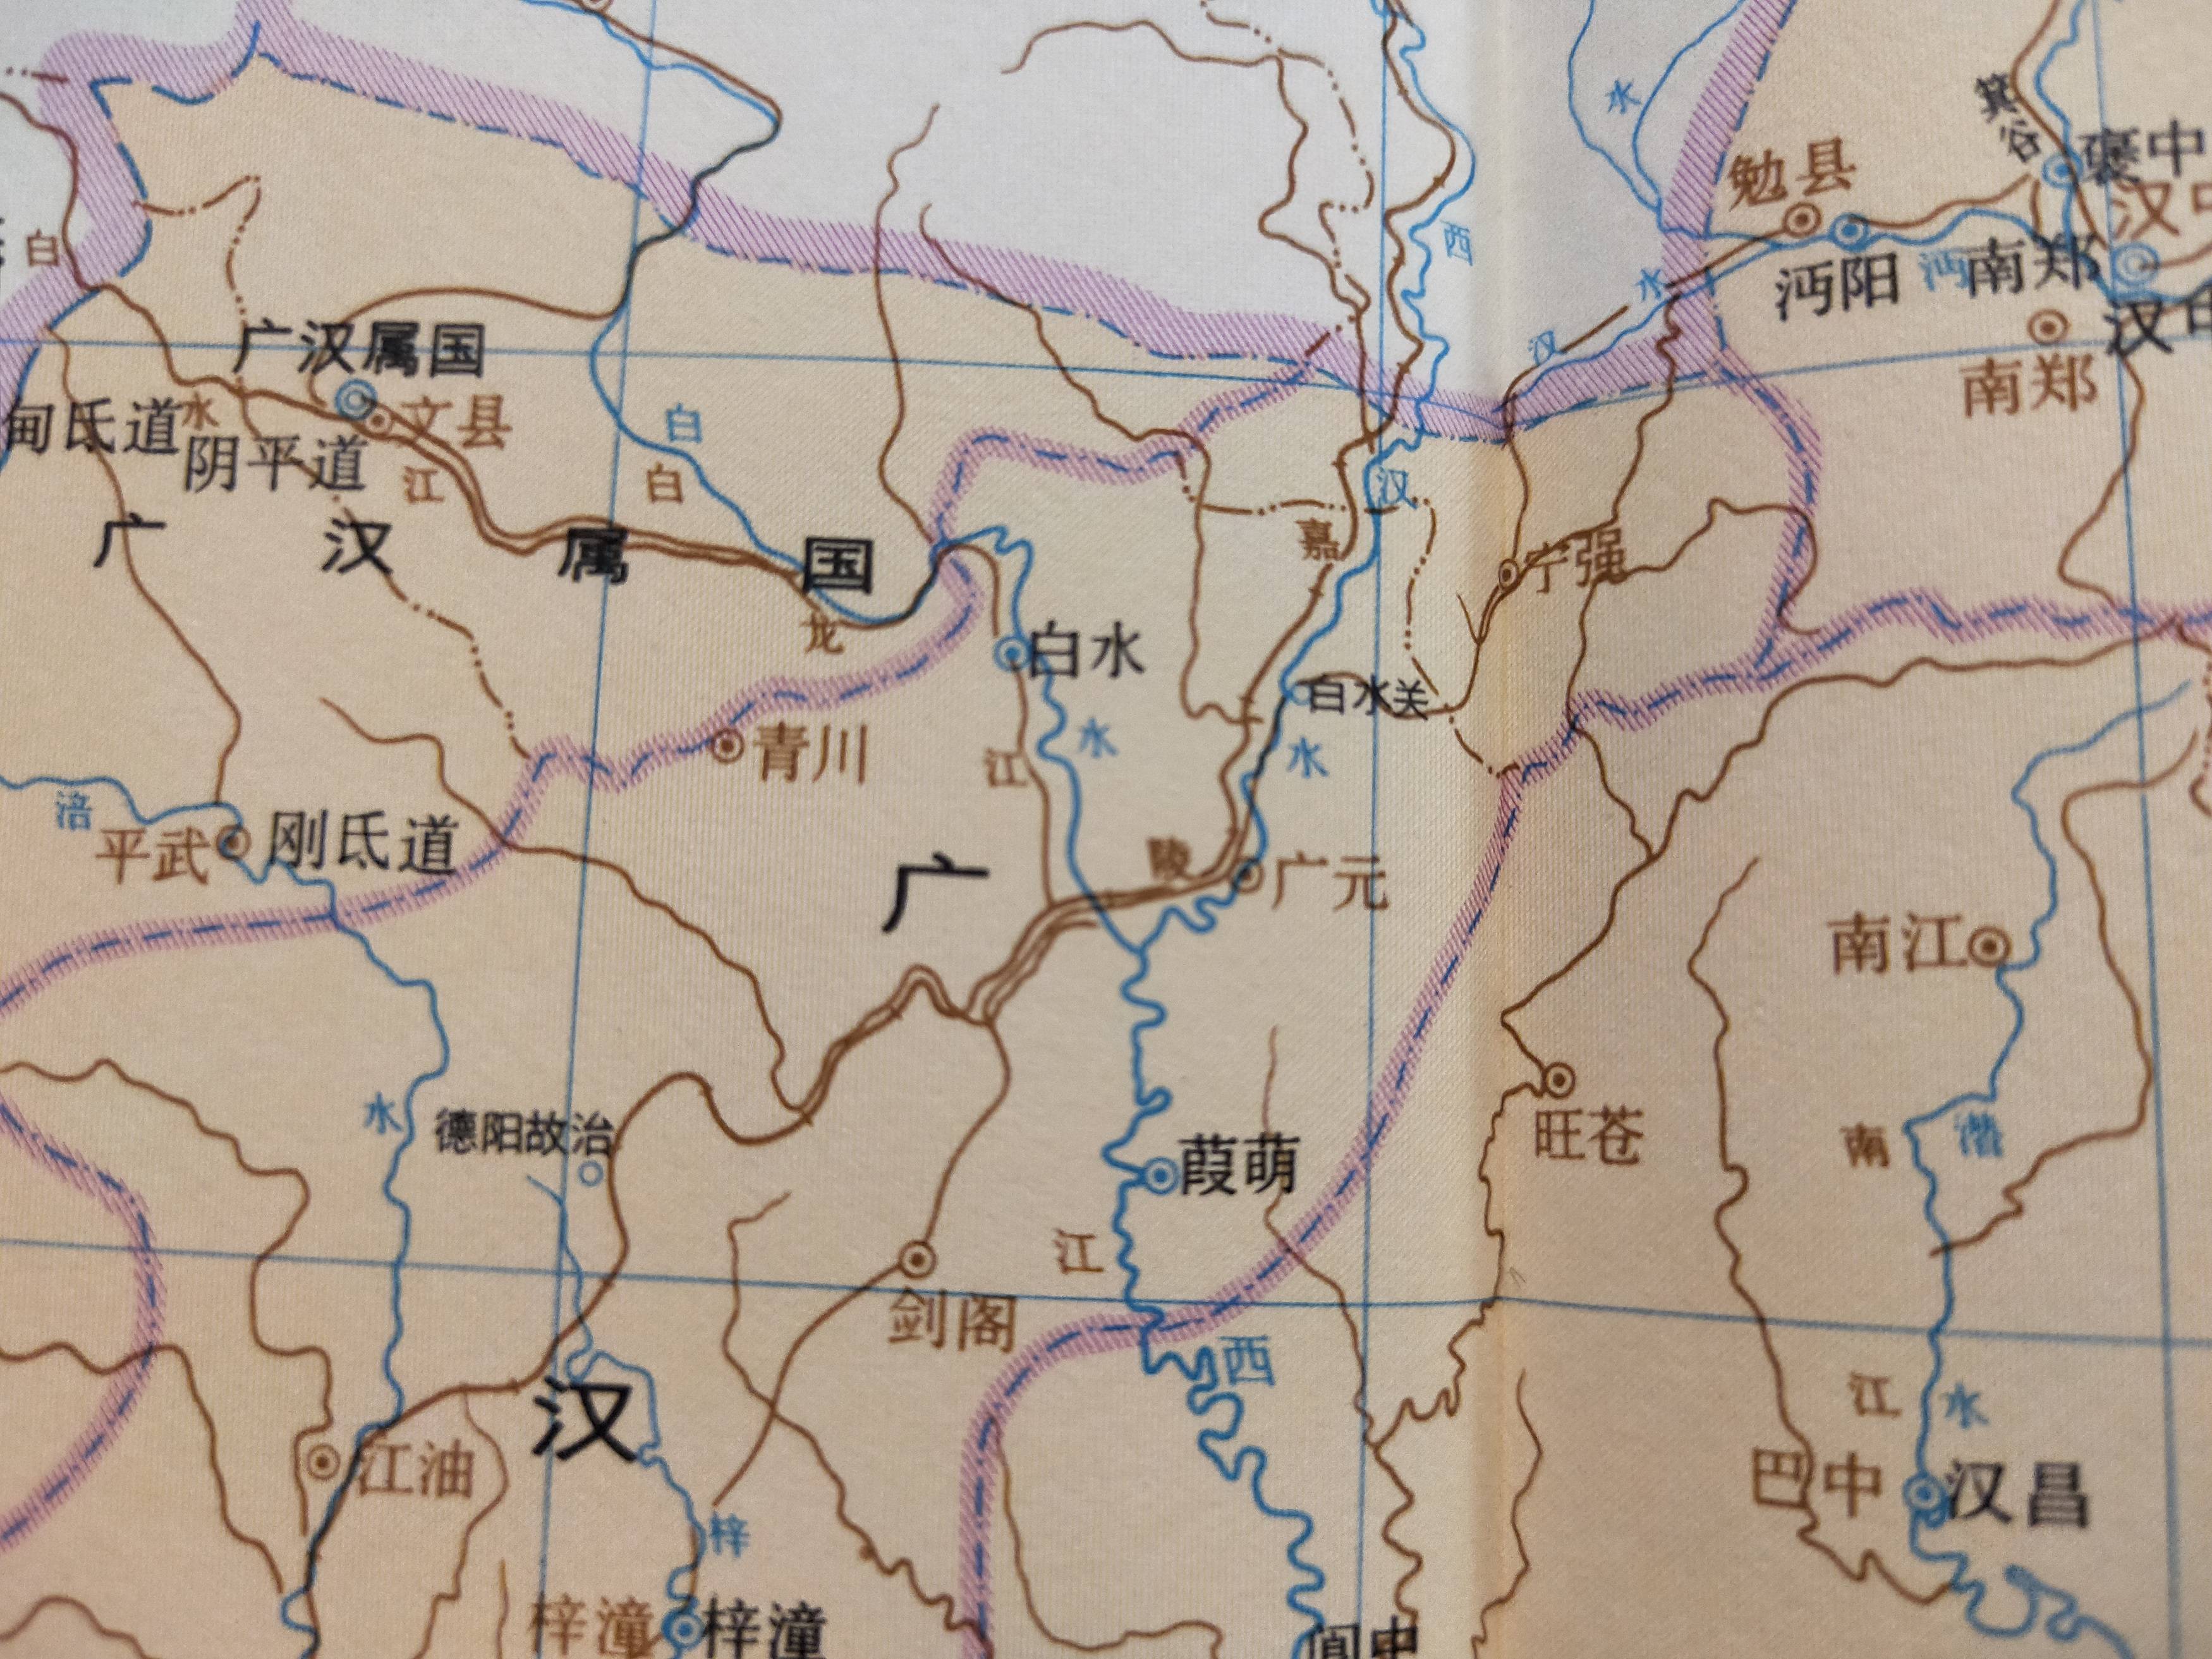 西汉中期之后,又在郡县以上设置州牧(刺史部),该机构逐渐由监察机构